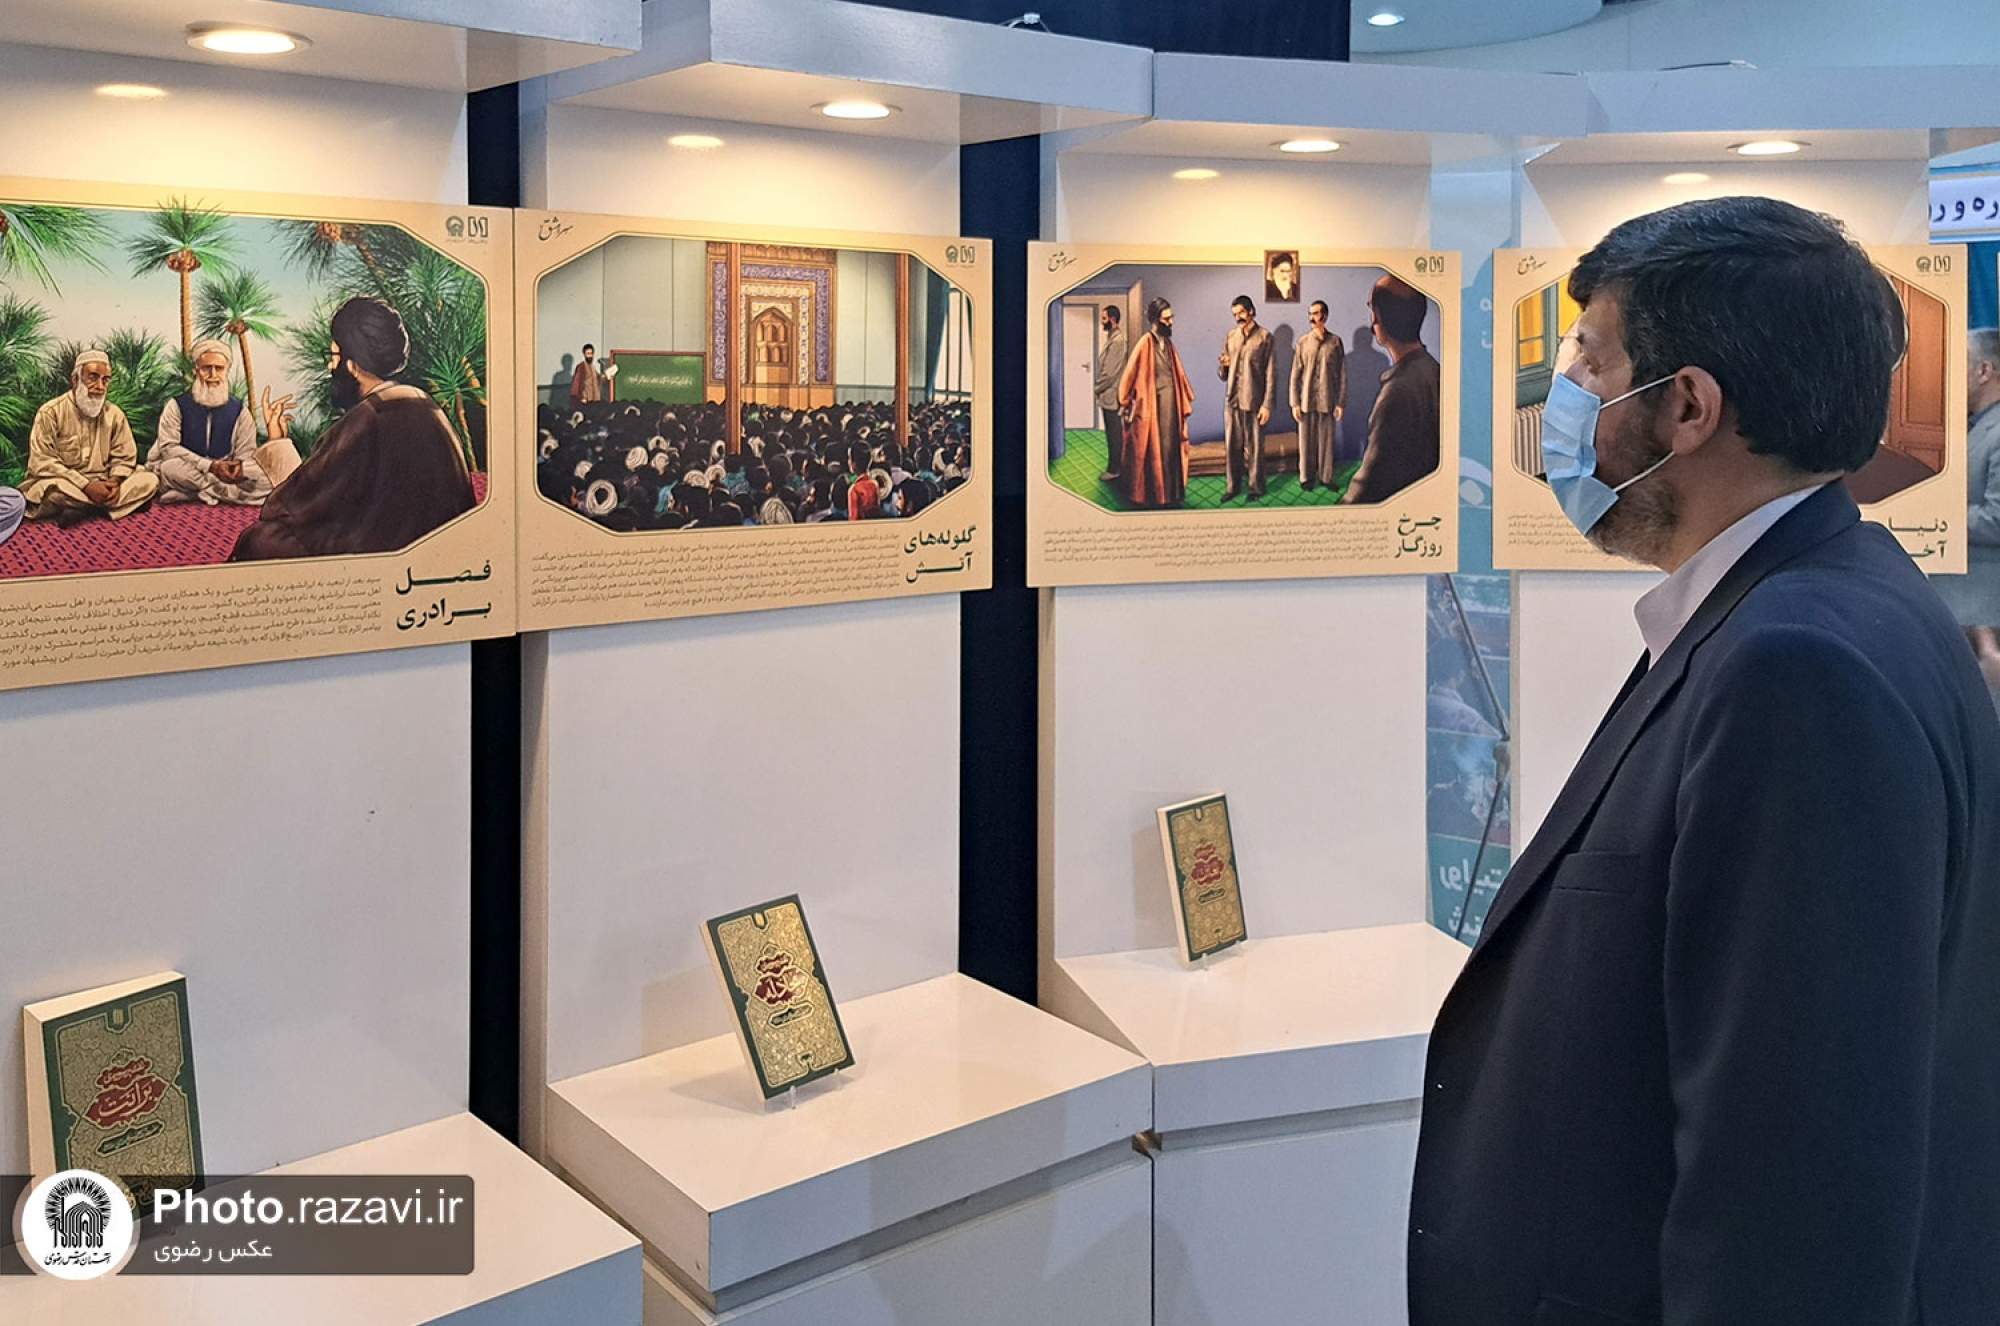 بازدید رئیس سازمان علمی، فرهنگی آستان قدس رضوی از نمایشگاه رواق خدمت